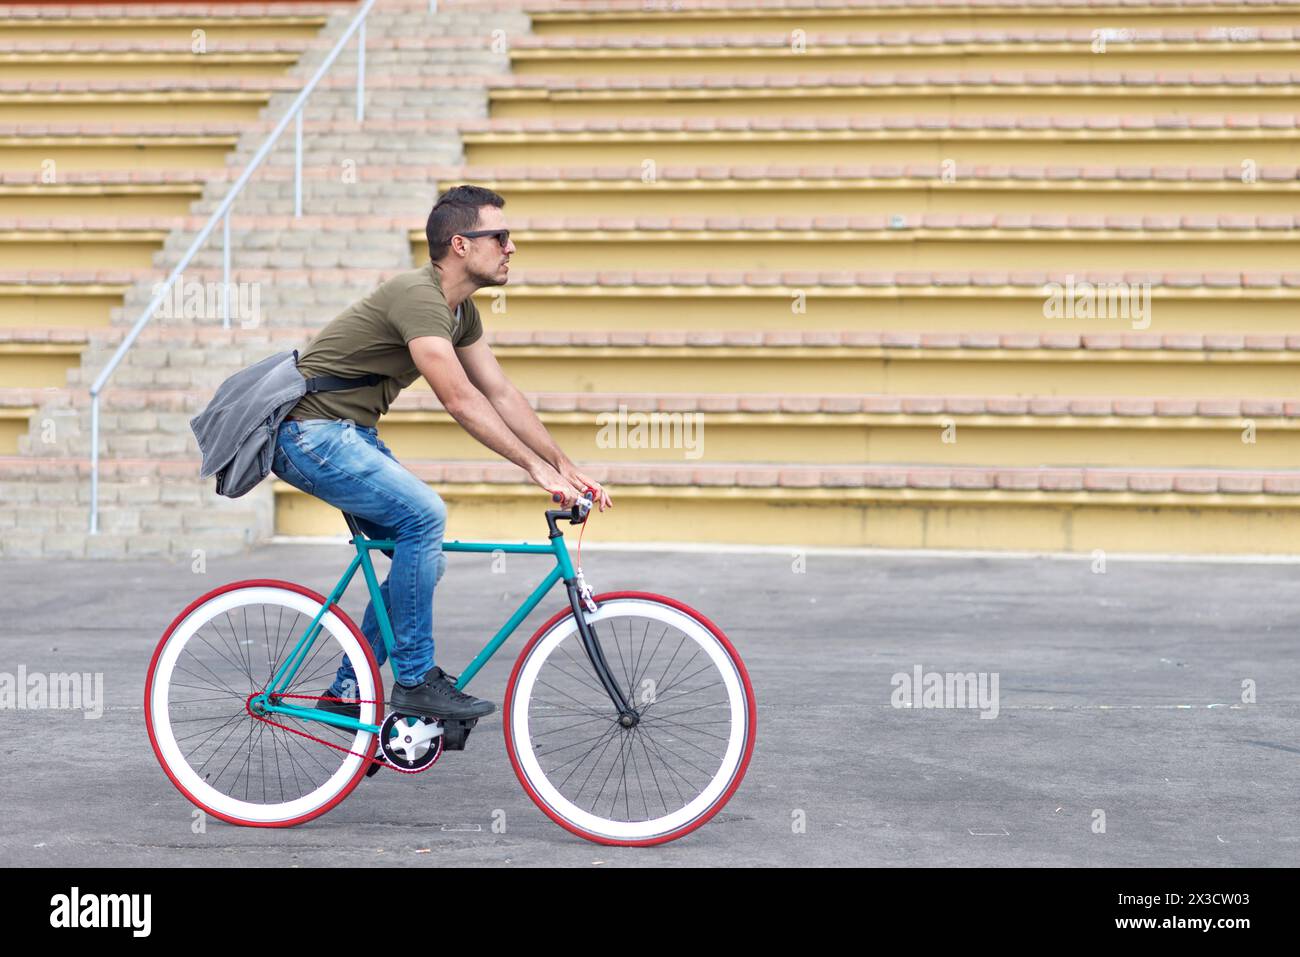 Ein fokussierter Mann in lässiger Kleidung fährt in einer urbanen Umgebung ein Fahrrad mit festem Gang, mit einer Kuriertasche über der Schulter, die den aktiven, umweltfreundlichen tran darstellt Stockfoto